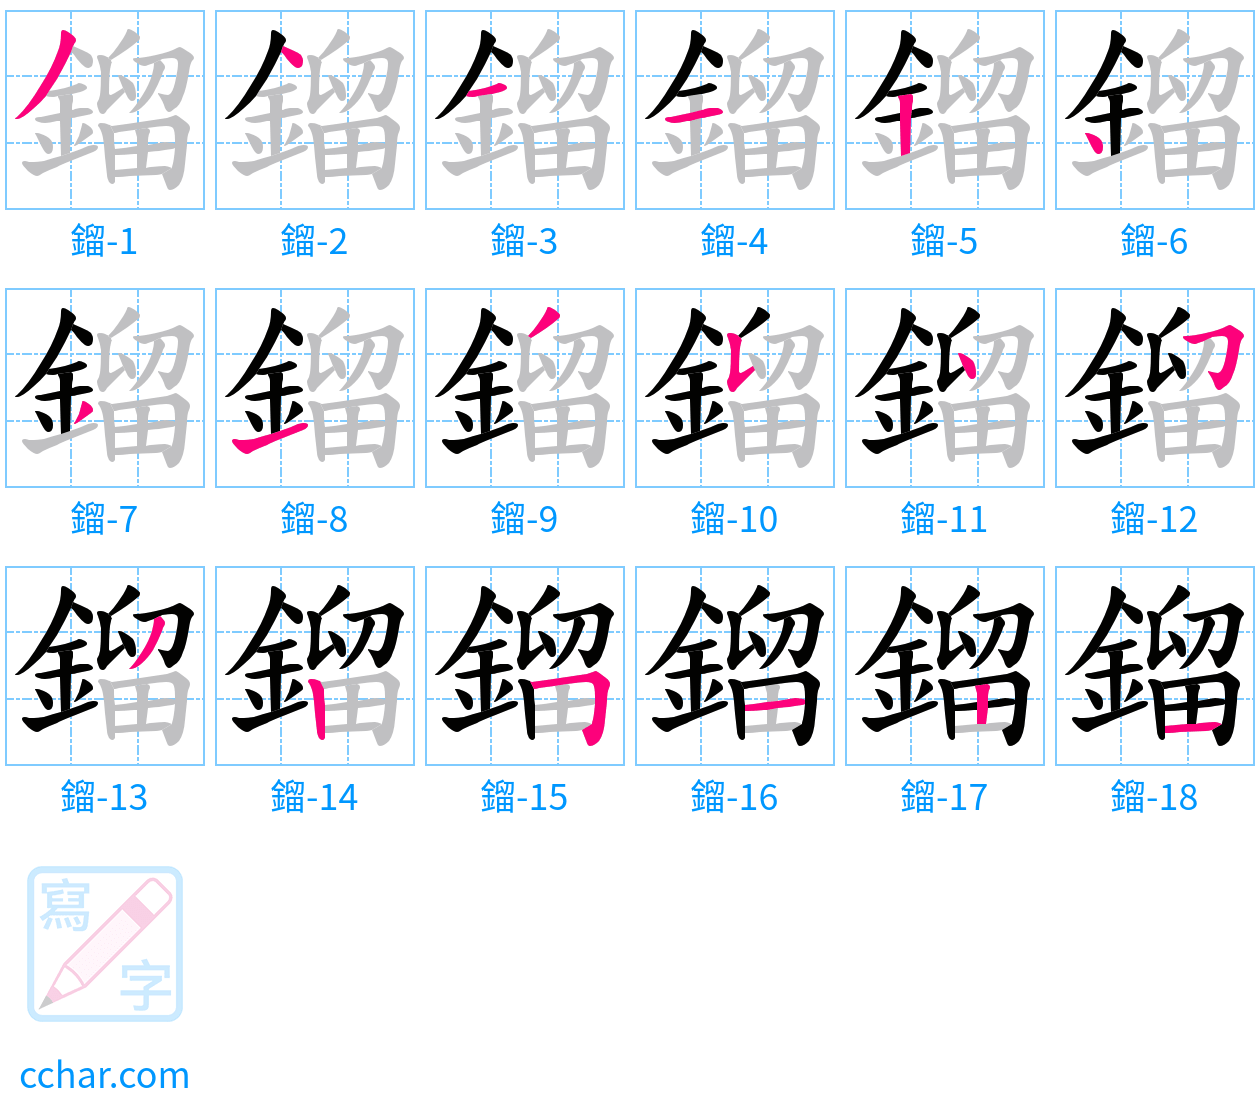 鎦 stroke order step-by-step diagram